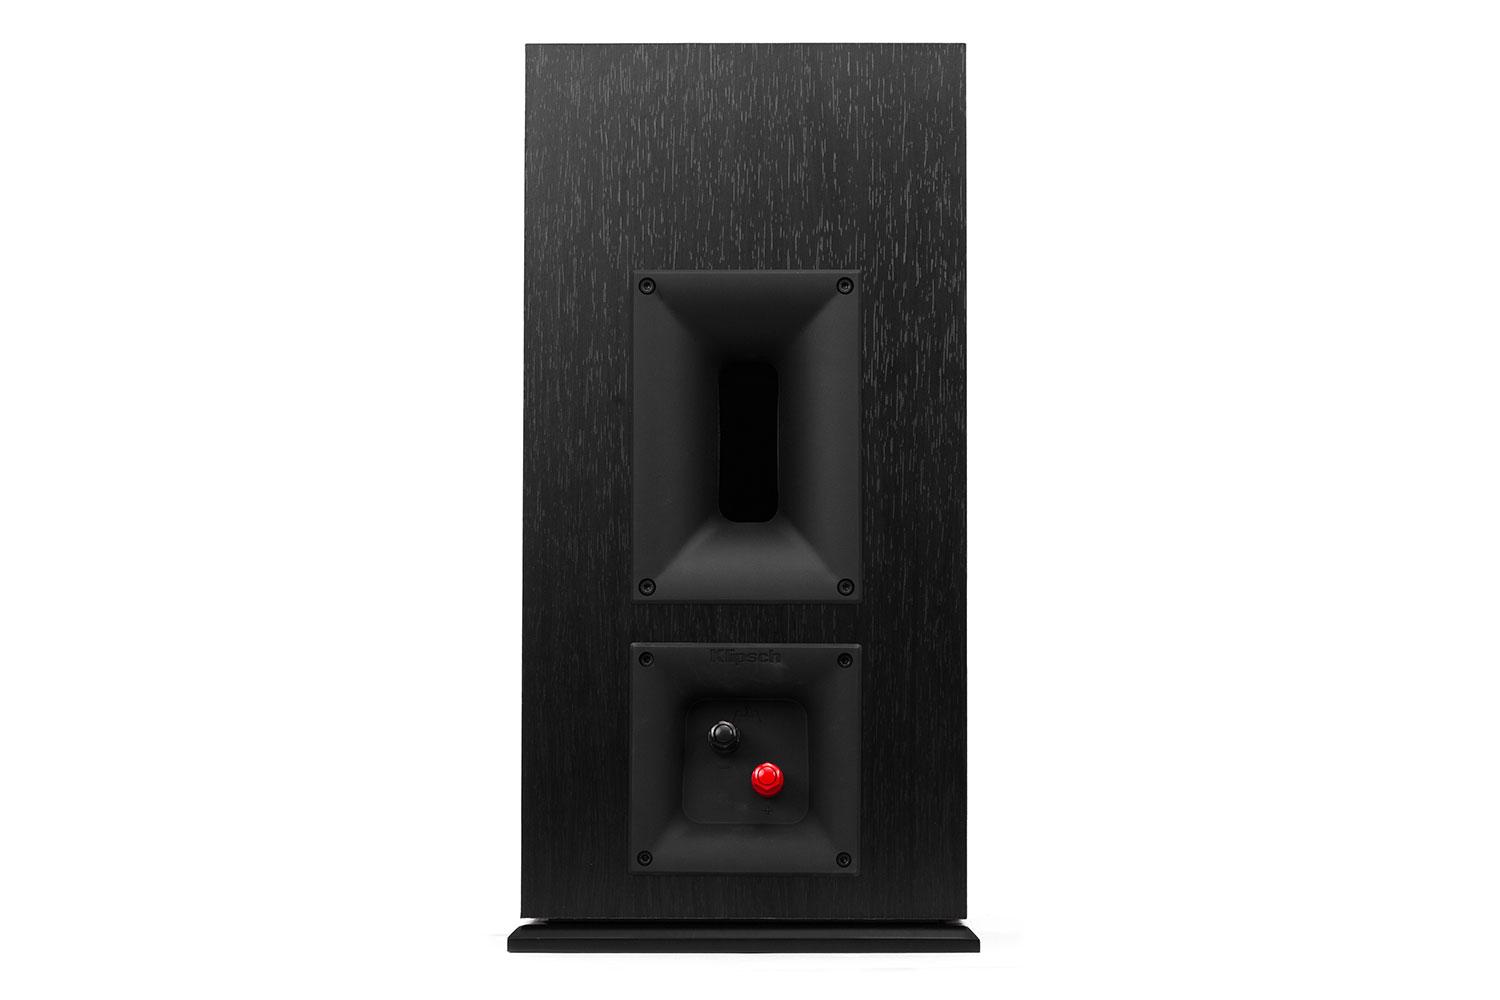 klipsch reference premier speaker system debuts at ces 2015 160m back